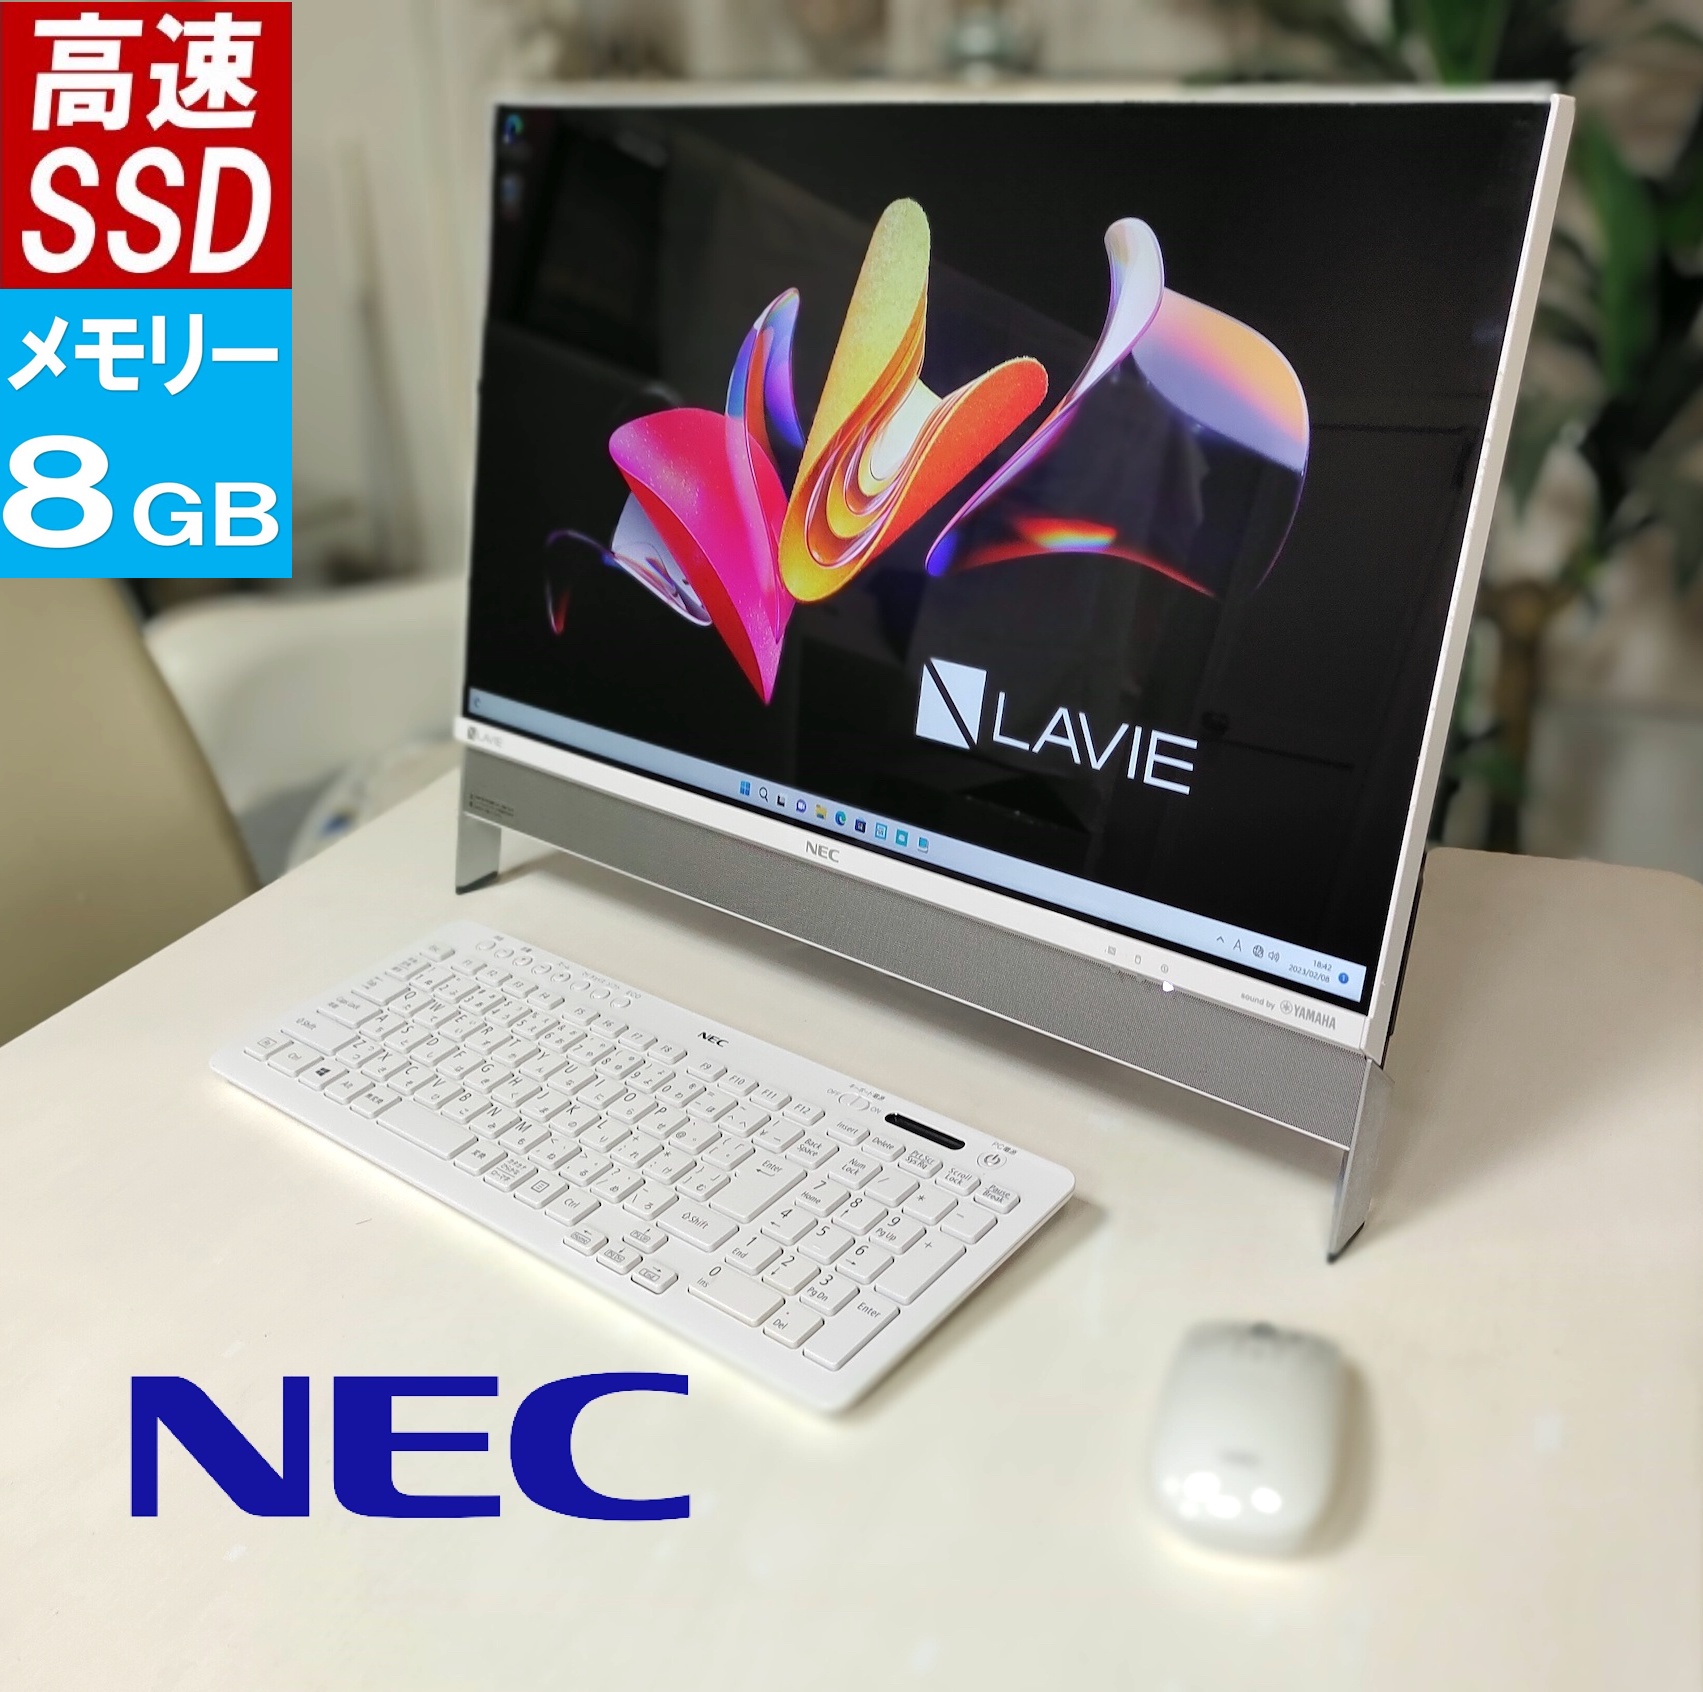 【楽天市場】NEC ラビィ LAVIE DA370 白 中古 一体型 デスクトップ